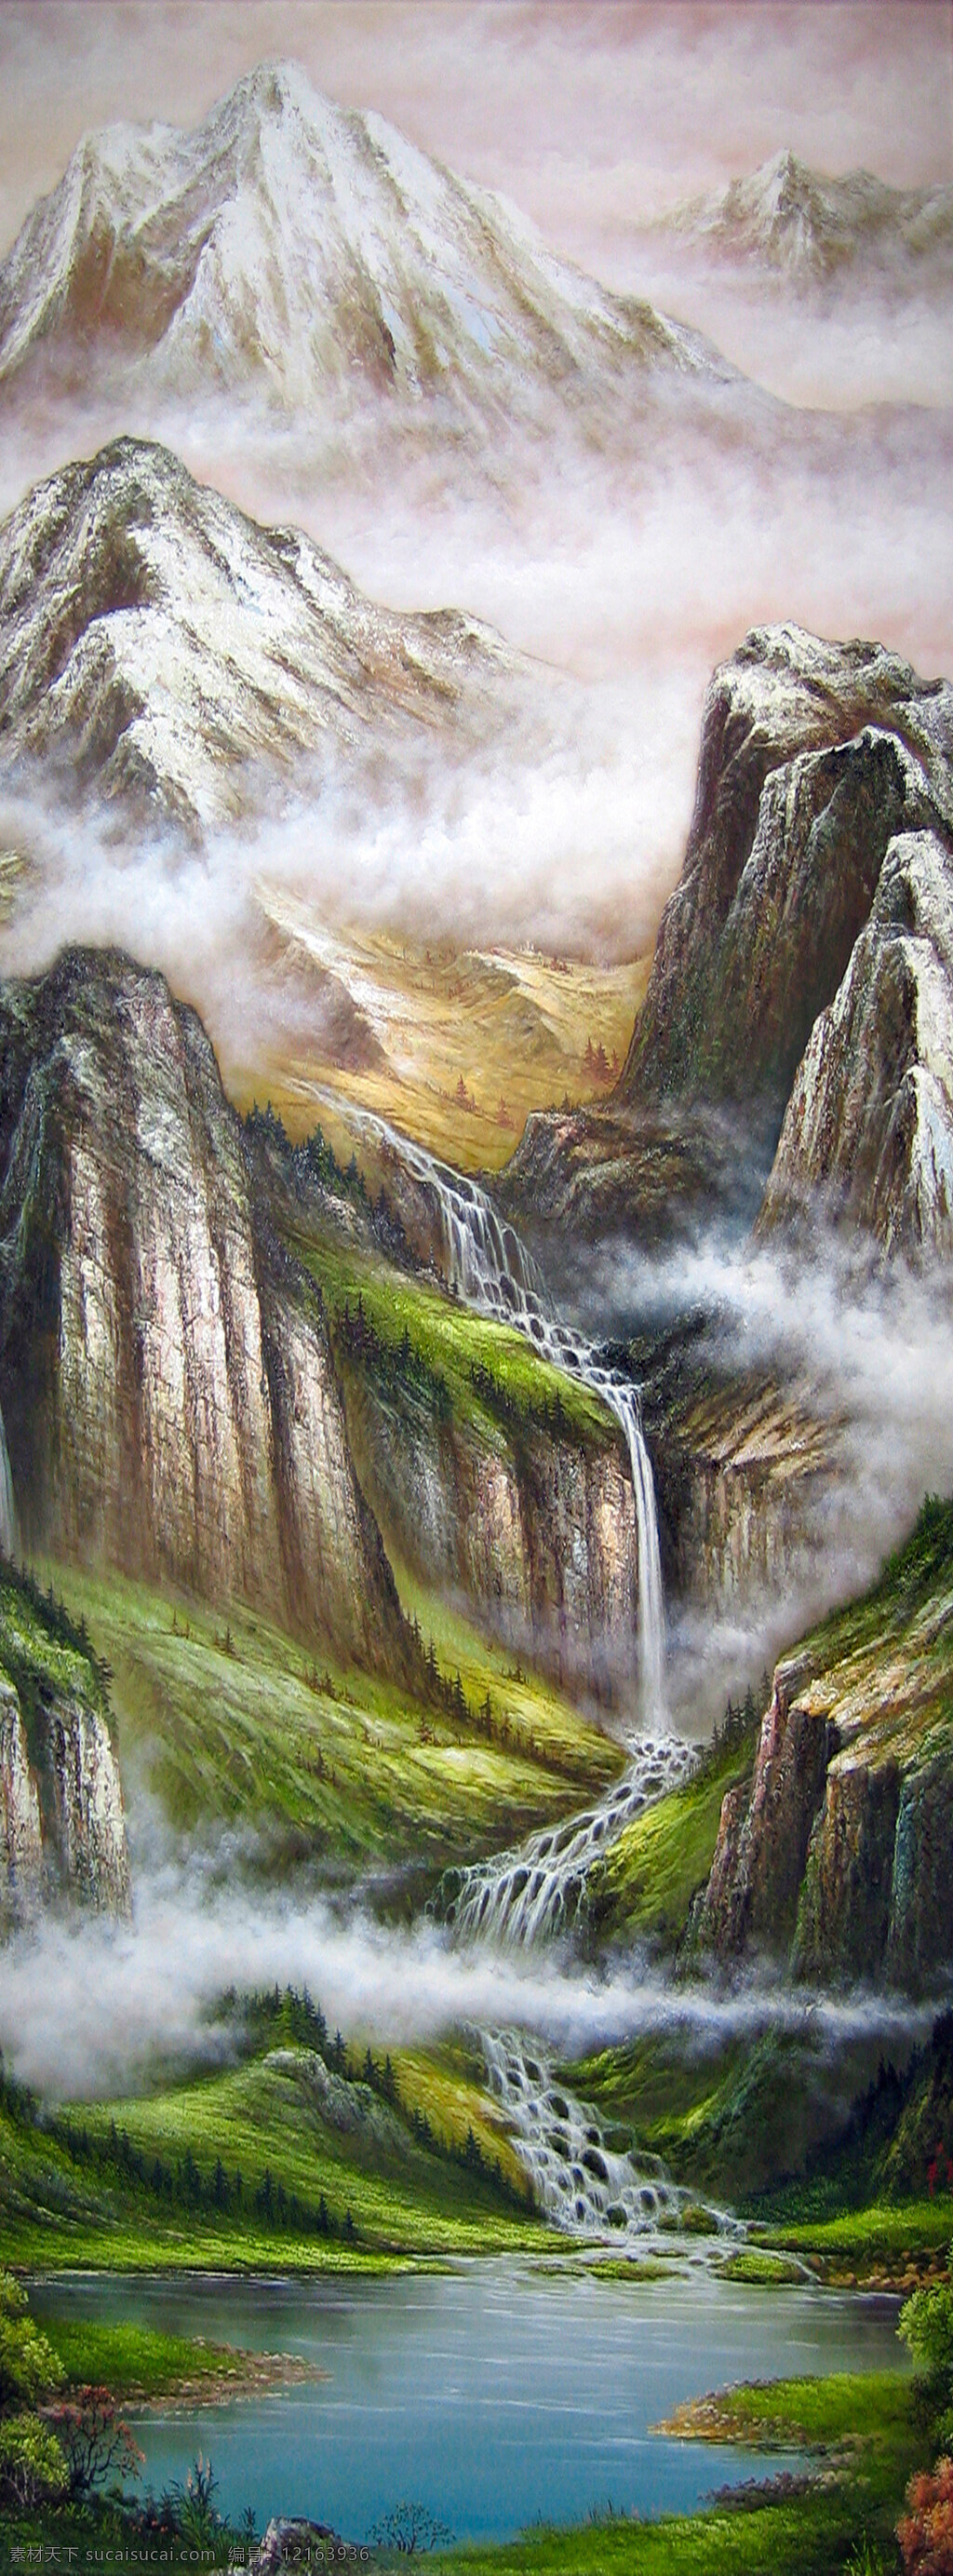 雨雾 山水 水墨画 美术 自然 景色 文化艺术 绘画书法